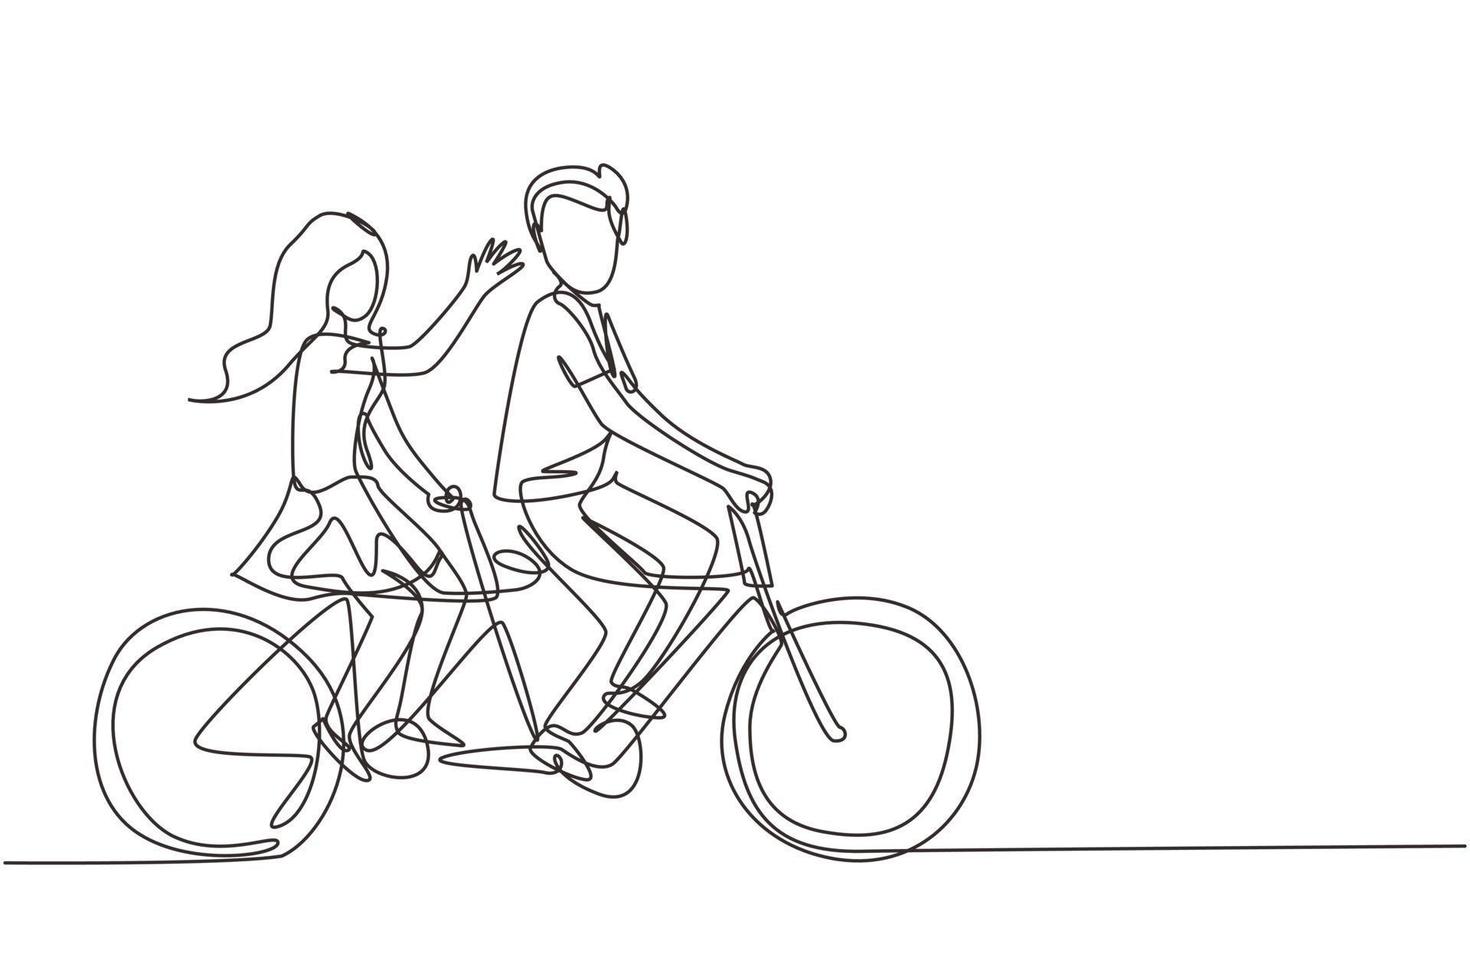 kontinuerlig en rad ritning romantiska par. lyckliga paret rider tandem cykel tillsammans. glad familj. intimitet firar bröllopsdag. enda rad rita design vektorgrafisk illustration vektor